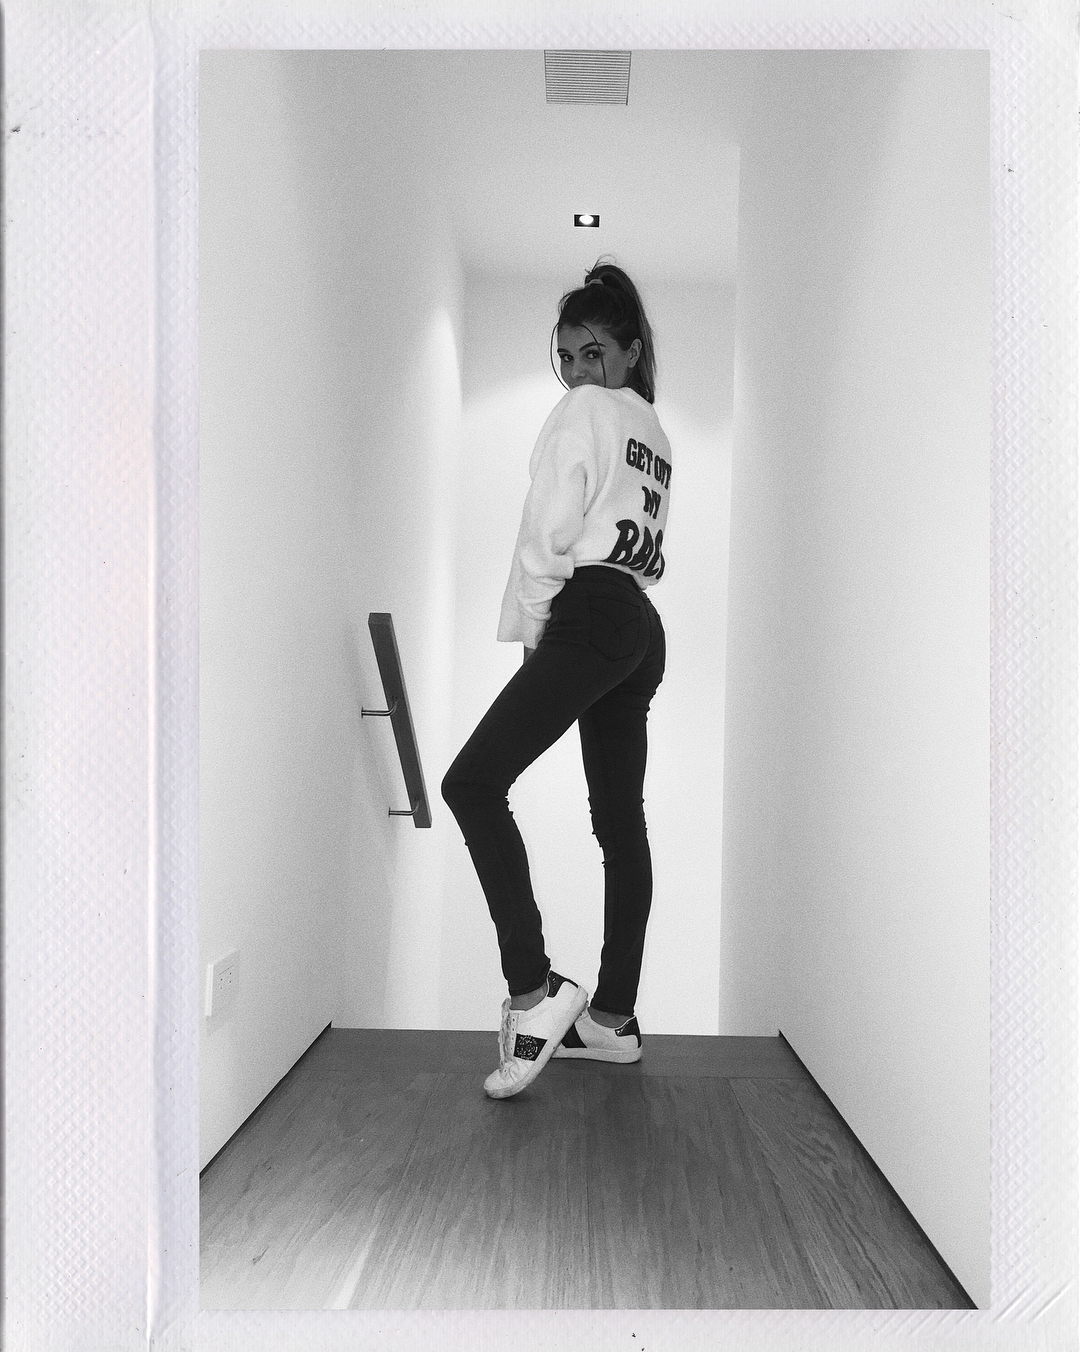 Olivia Jade â€“ Instagram and Social media 1